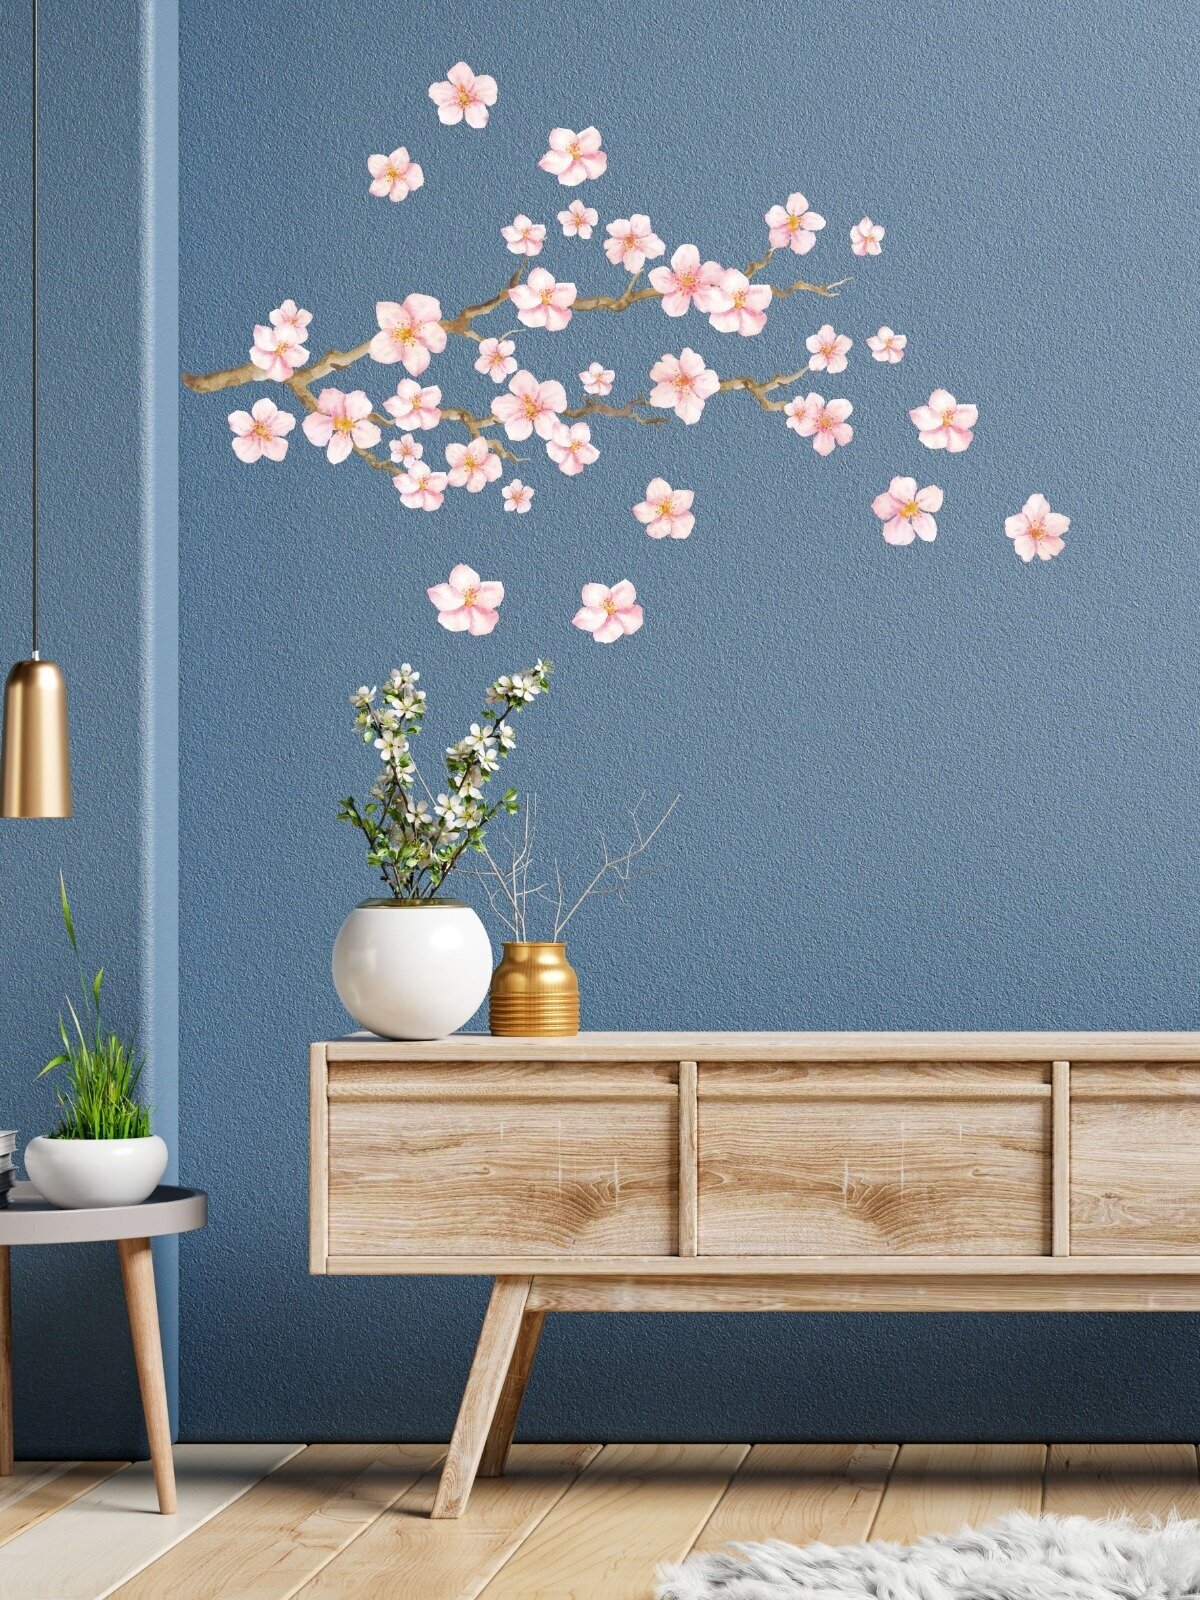 Наклейки интерьерные на стену Летние цветы / Наклейка для дома / Стикеры настенные / Оформление и декор Lisadecor